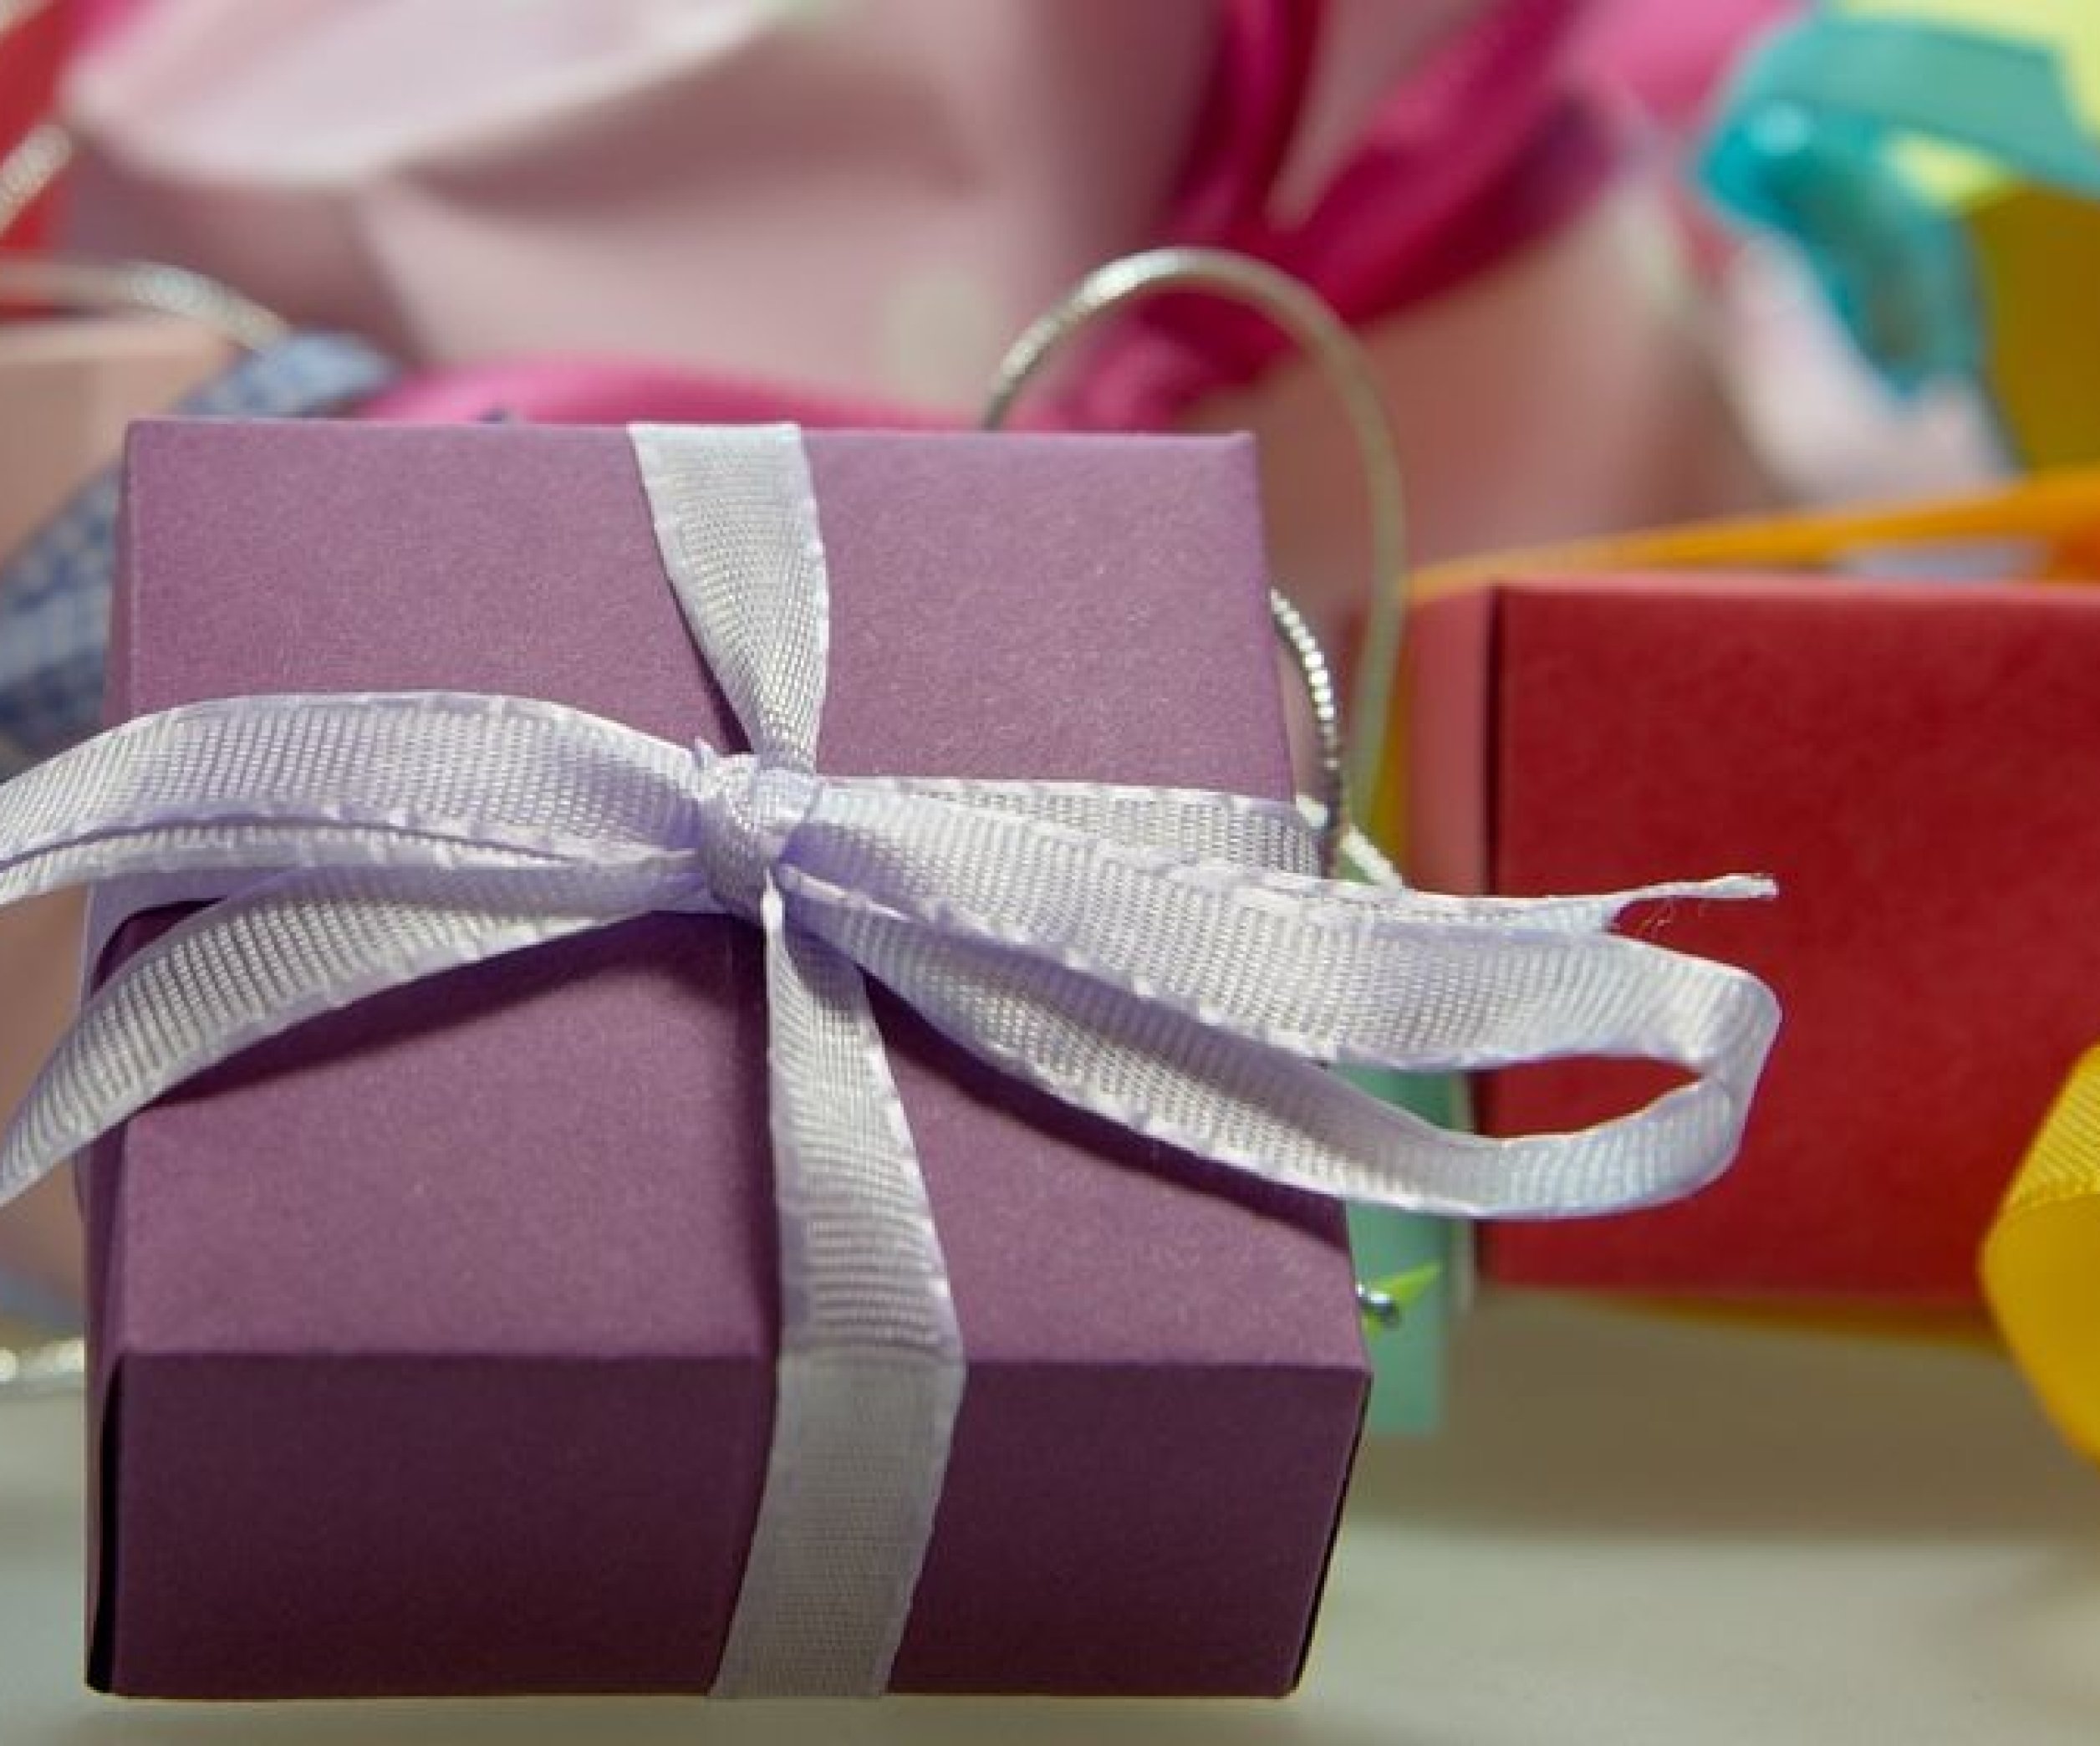 Как правильно передаривать подарки? - эксперты ЮАмейд